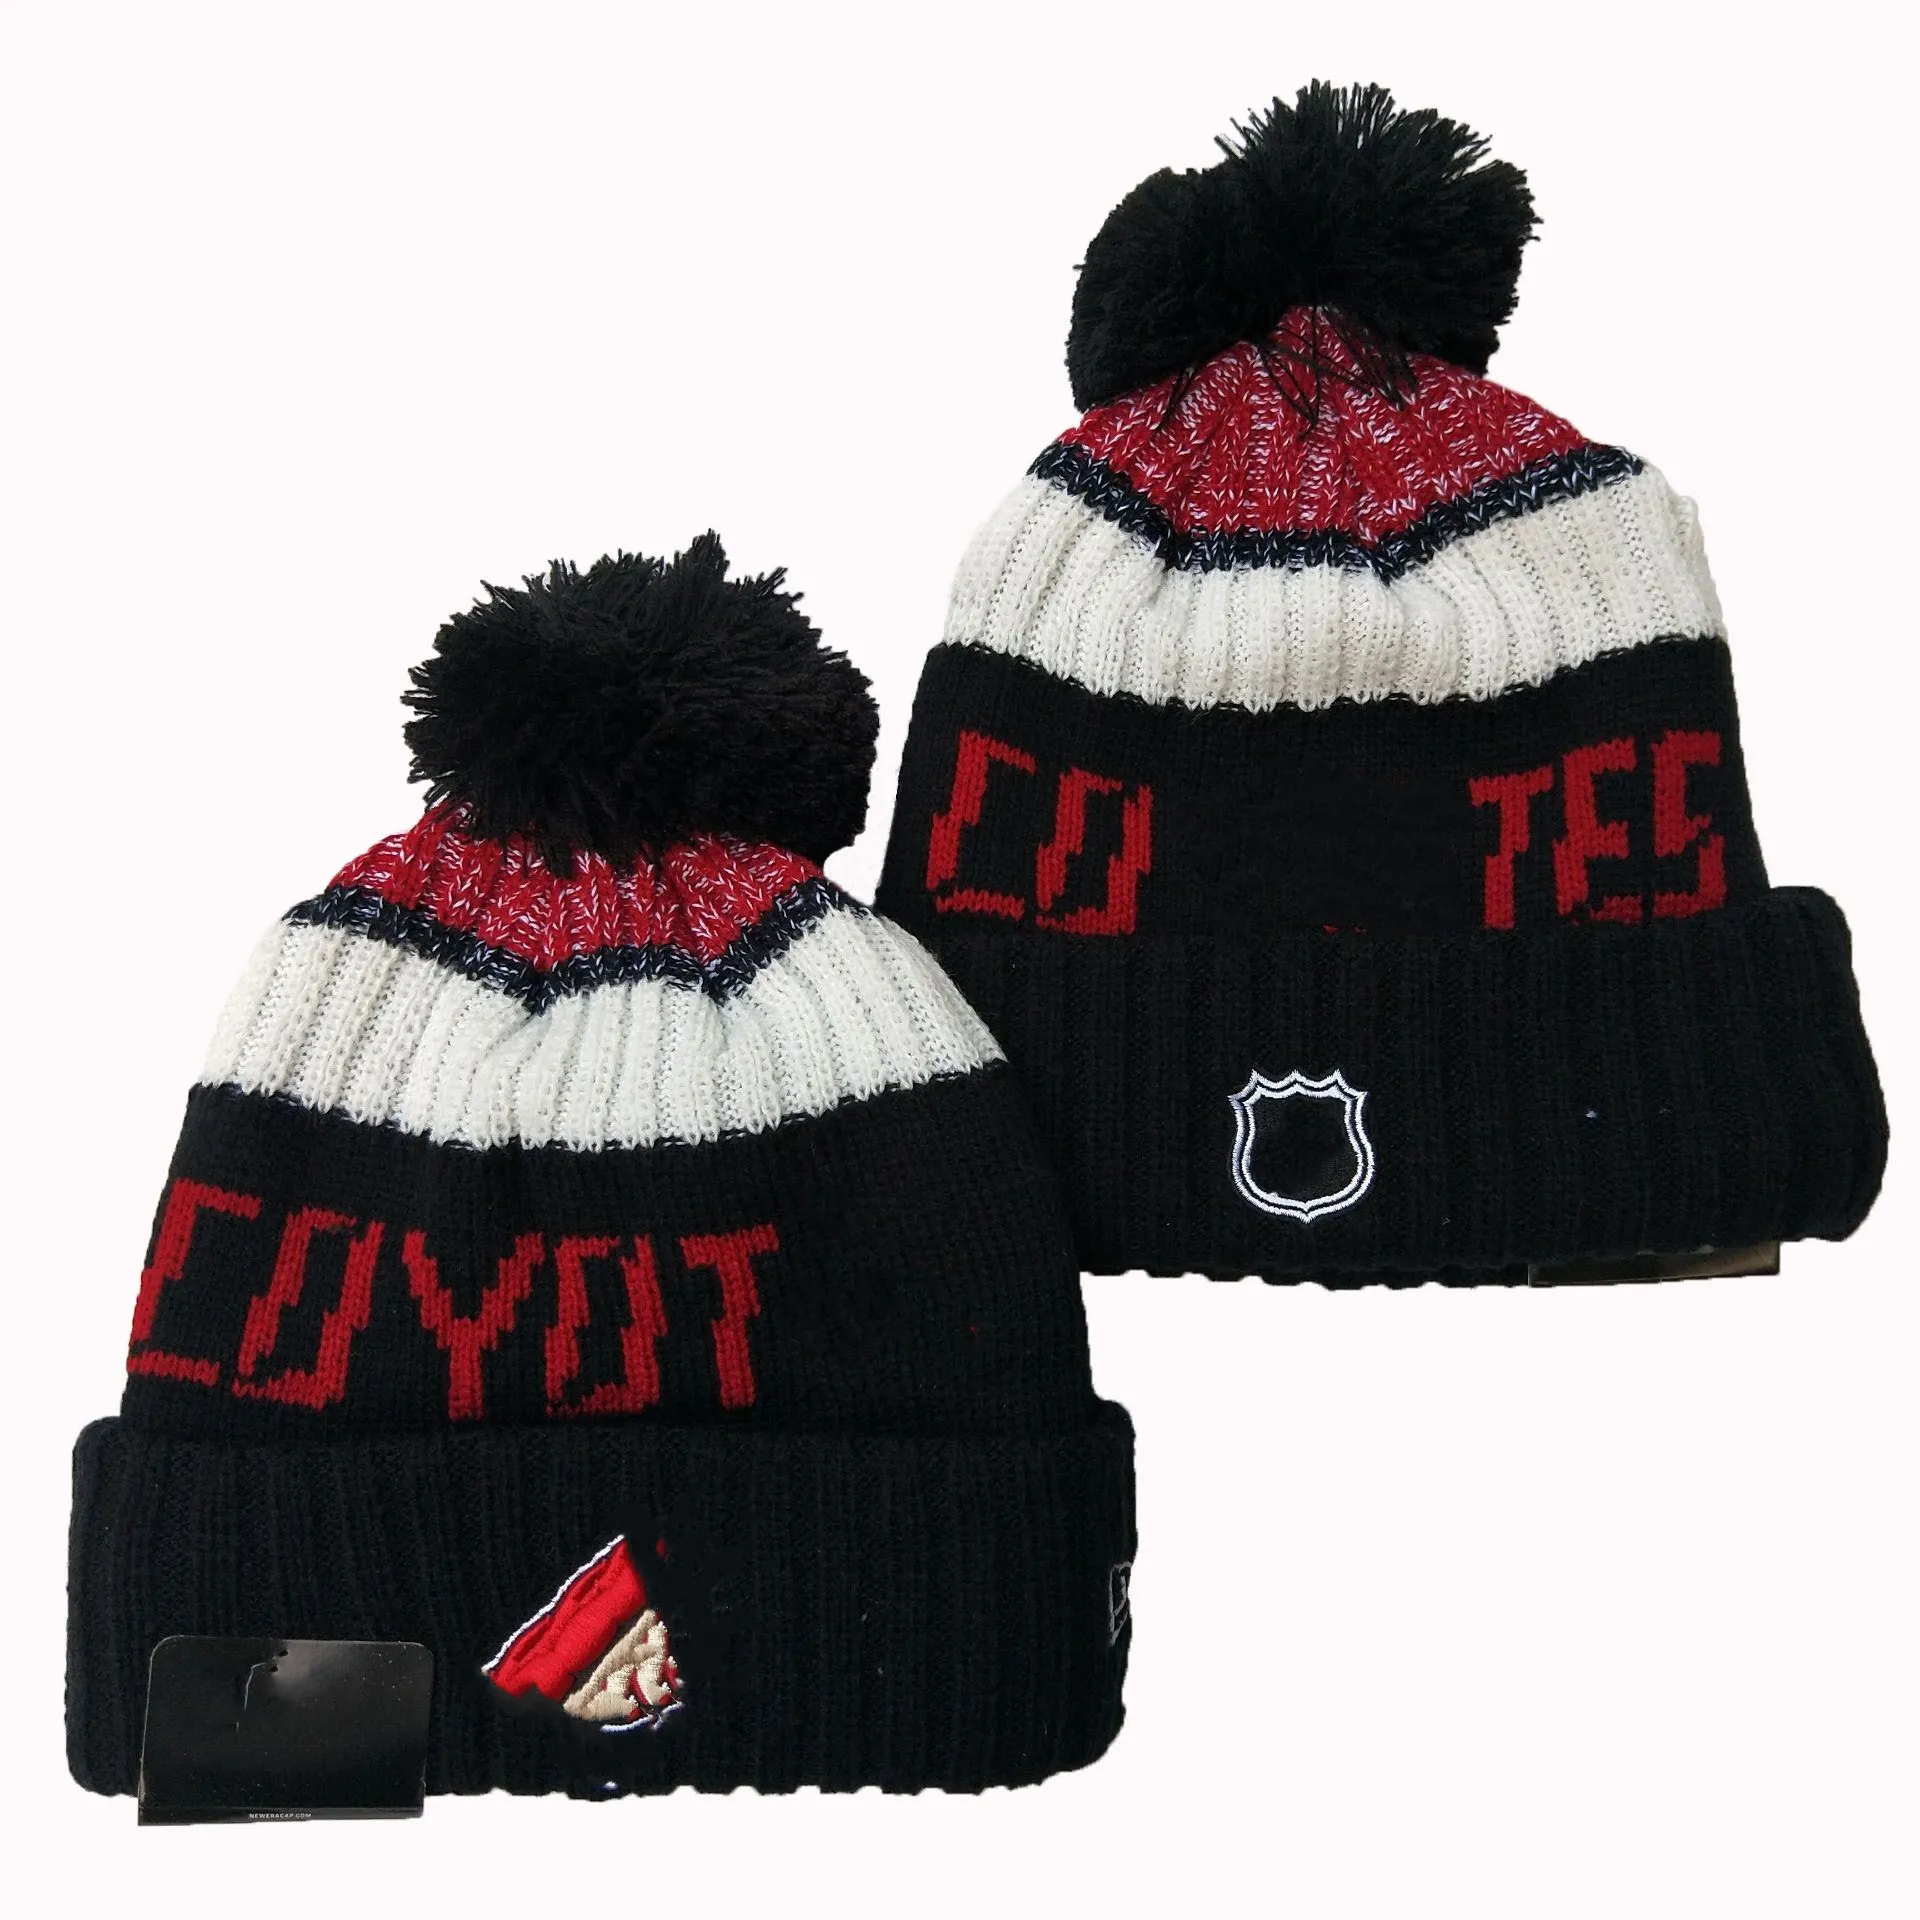 Les plus récents bonnets tricotés d'hiver en plein air Couples chapeau Snapbacks Masque Caps Mode unisexe Bonnets de sport Casual Football Hip Hop chapeaux ajustés Ordre mixte avec étiquette d'origine